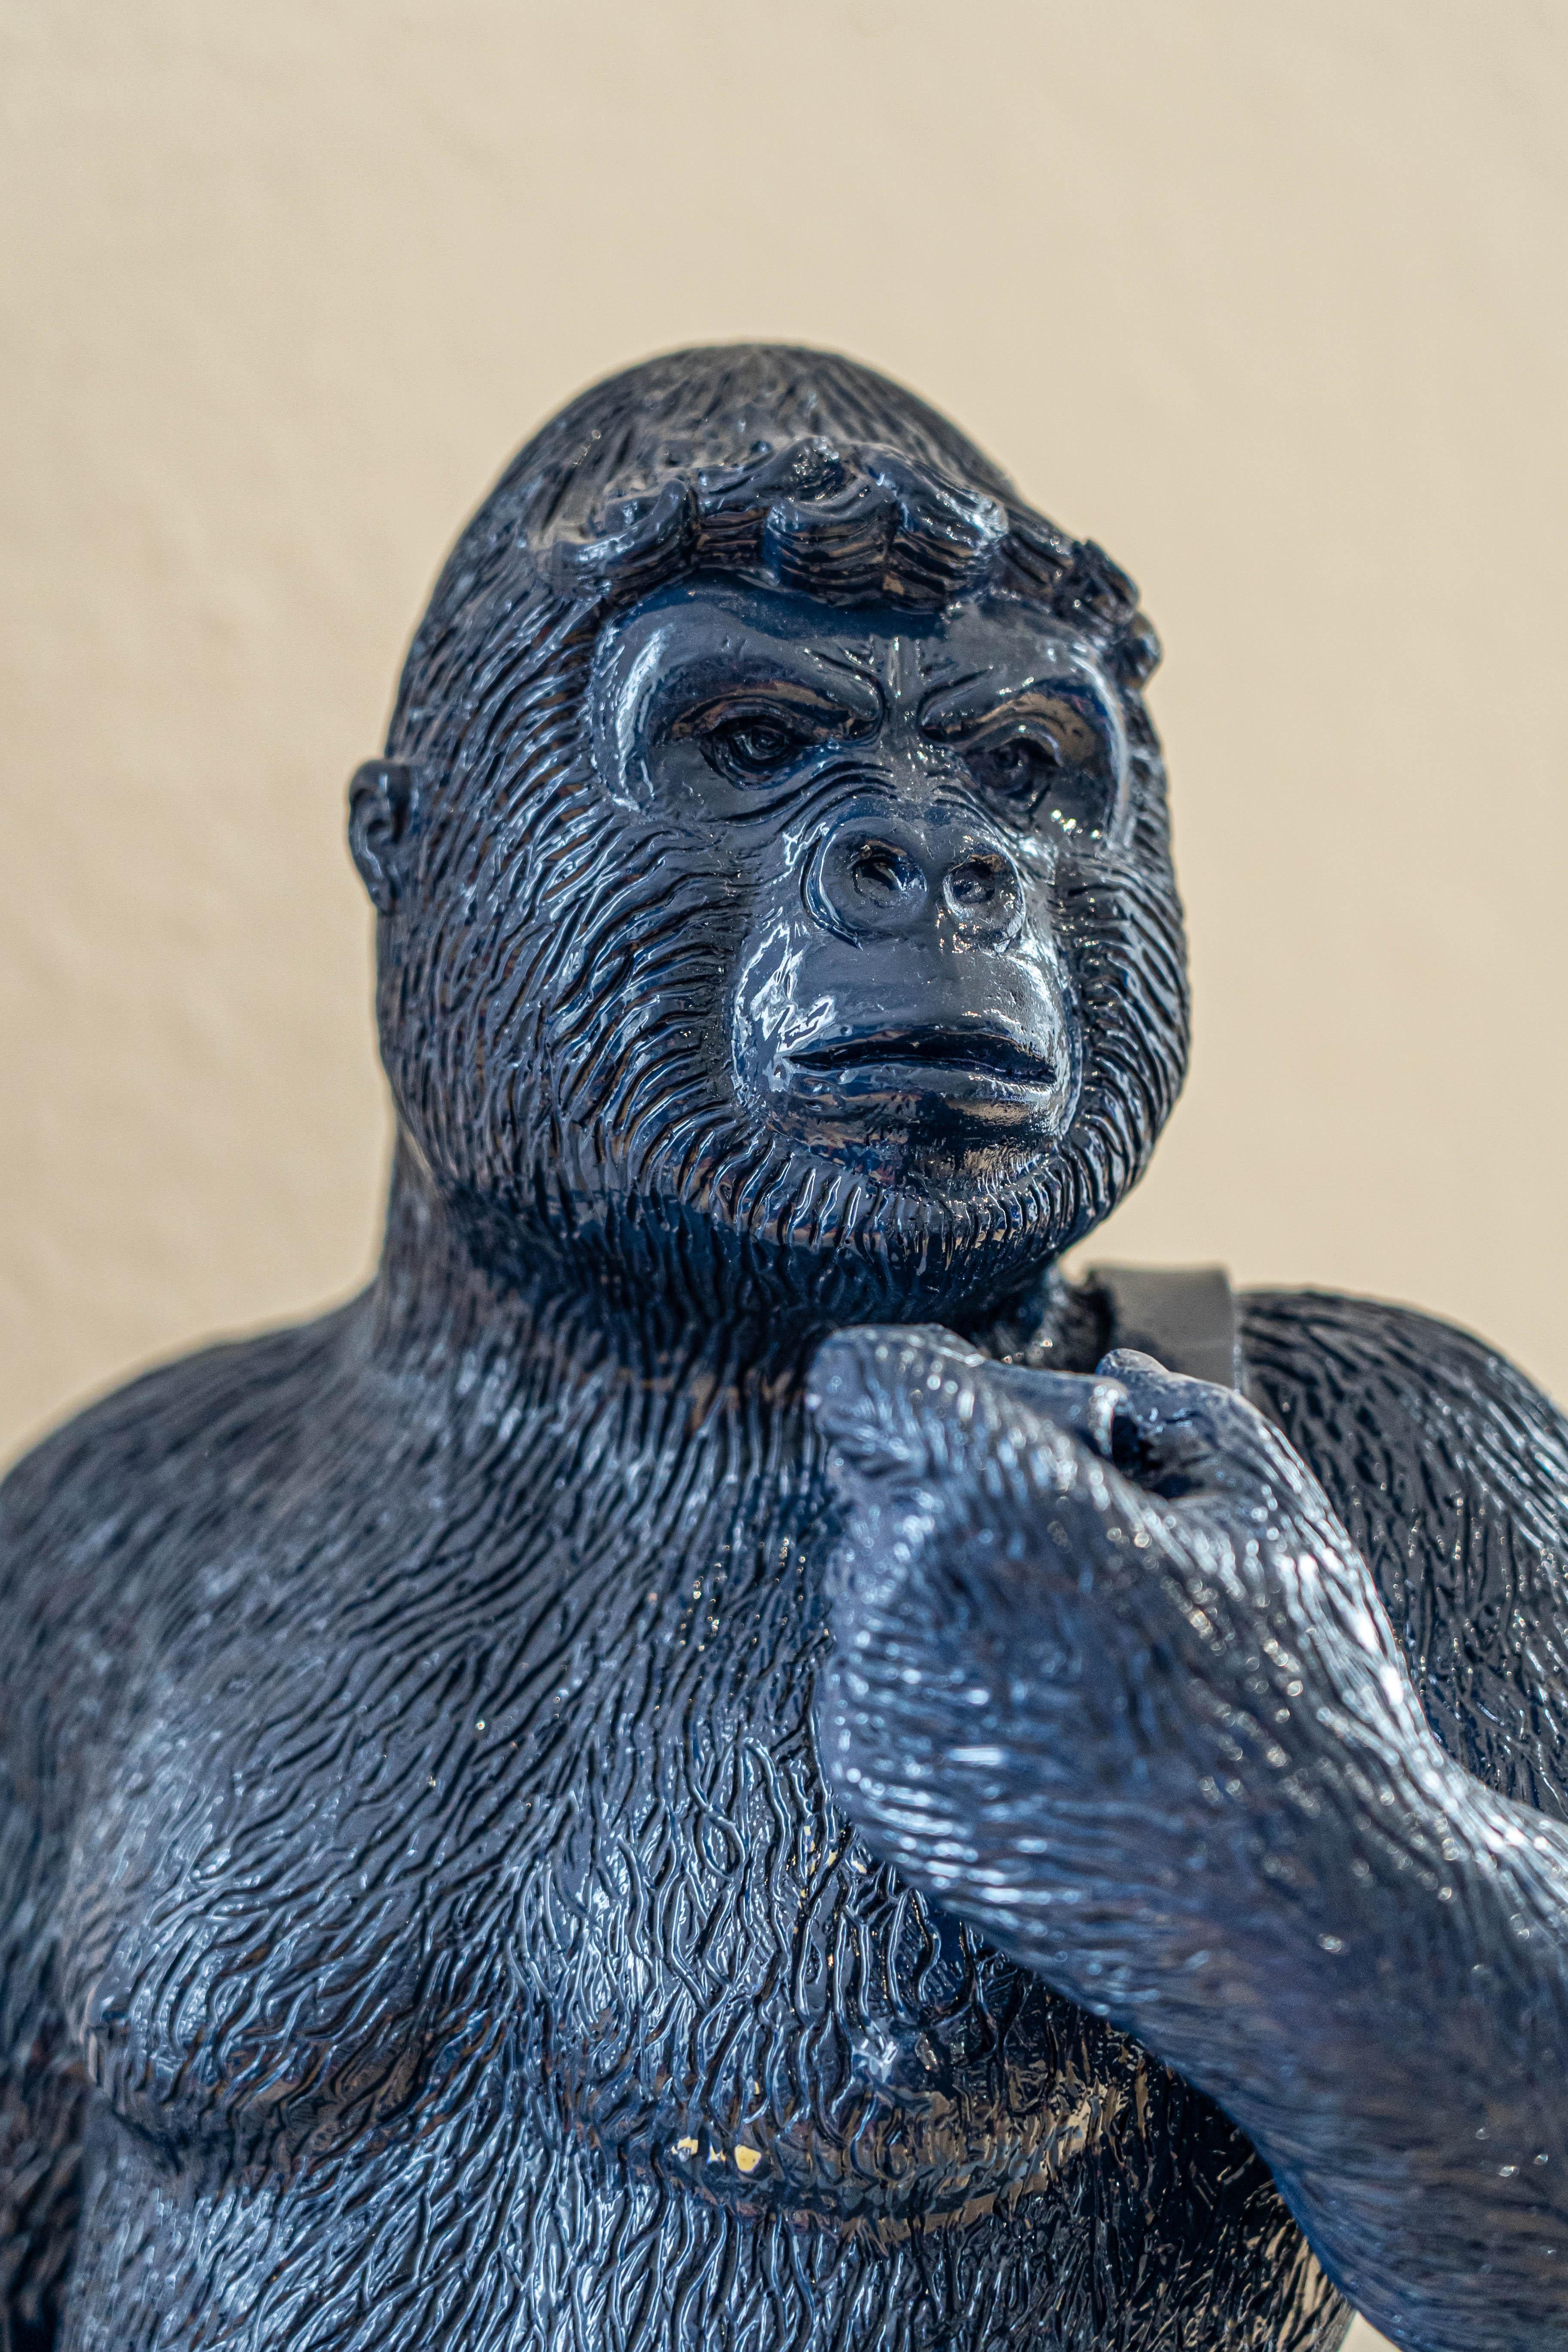 Bald! Dunkelblaue Gorilla-Skulptur in der Haltung des „David“ von Michelangelo (Zeitgenössisch), Sculpture, von Patrick Schumacher